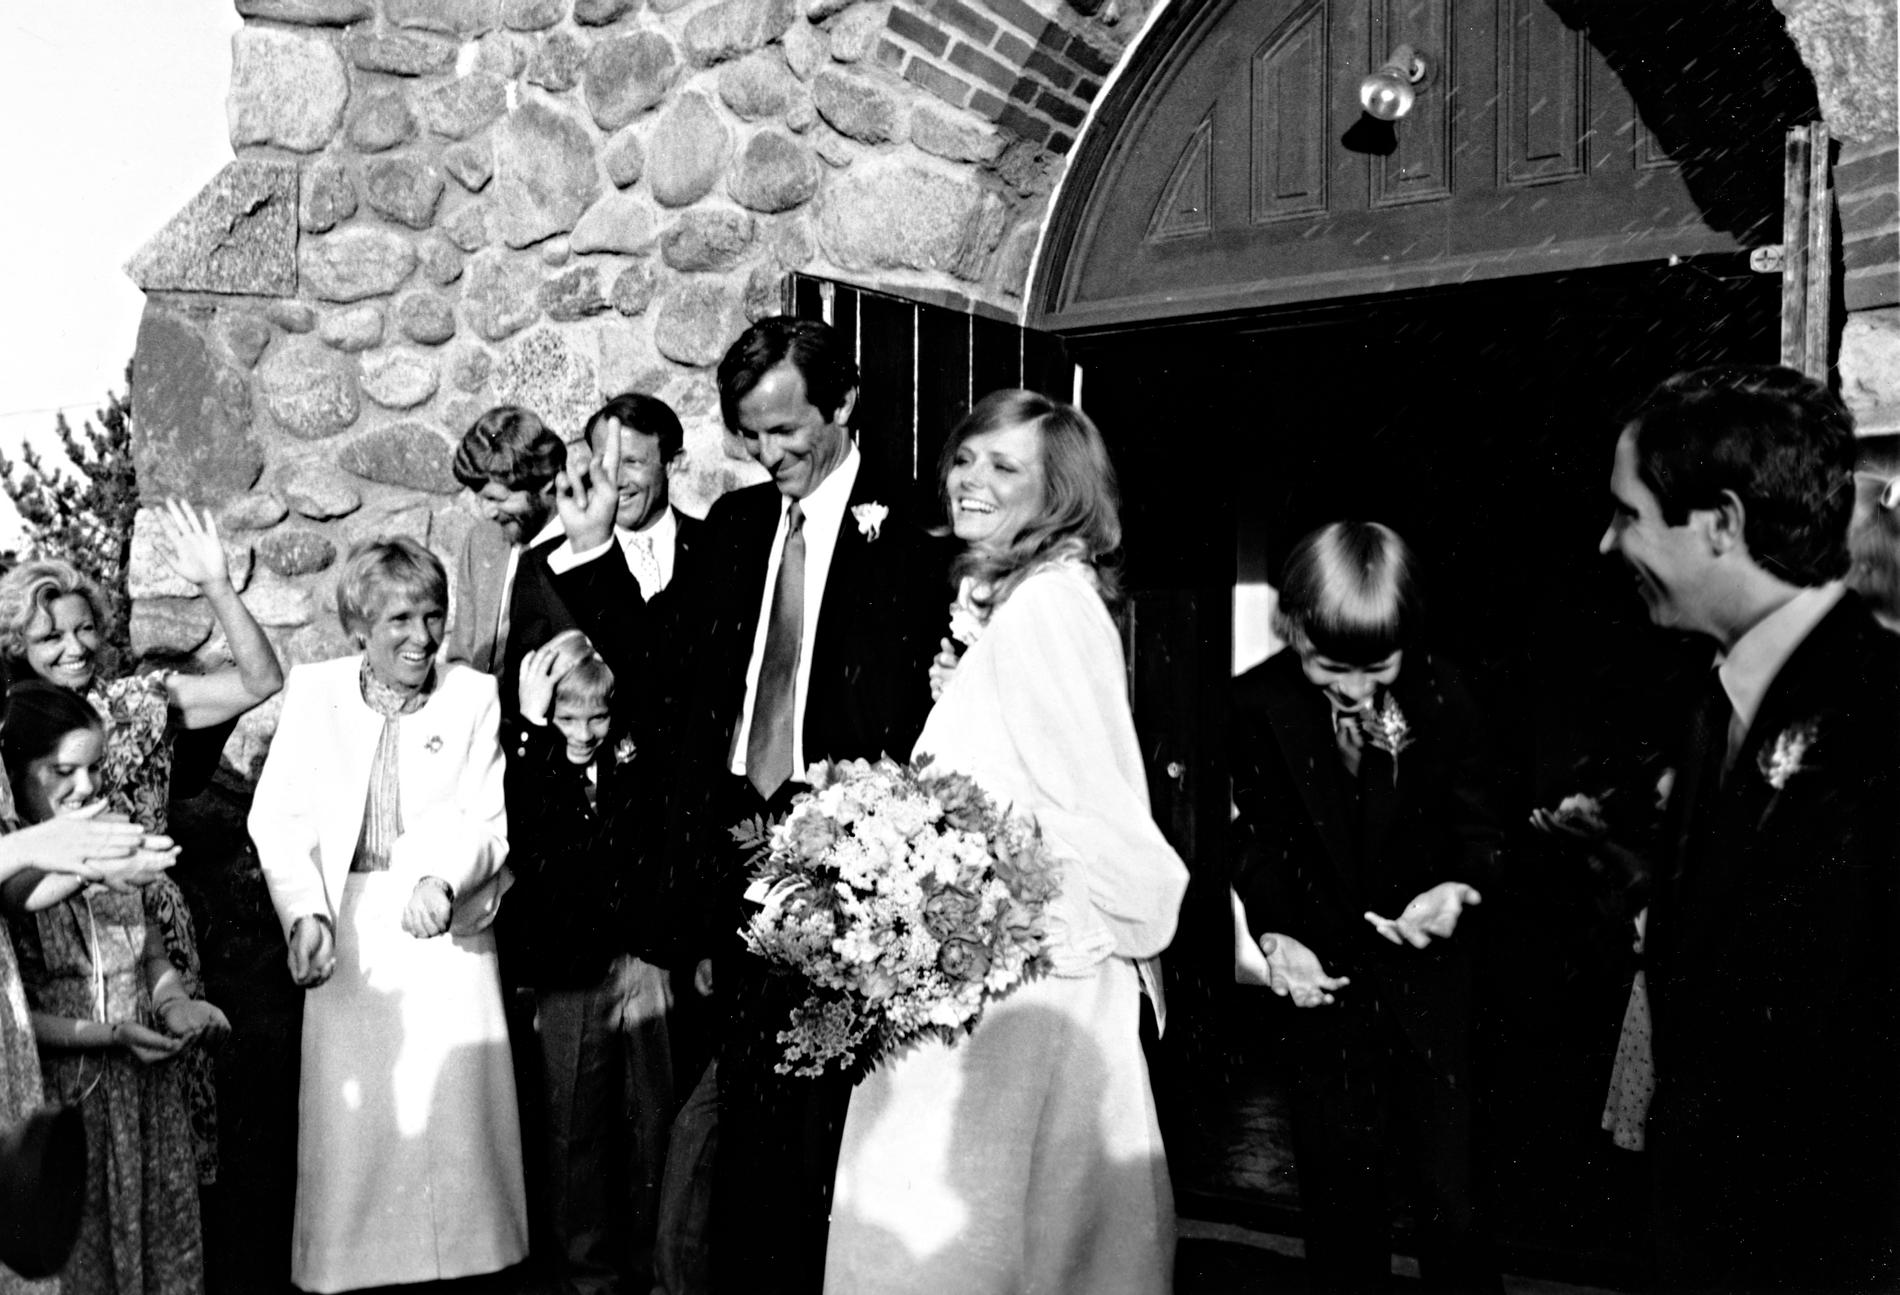 Fotografen Peter Beard och hans dåvarande fru, modellen Cheryl Tiegs gifte sig på Long Island. Arkivbild.